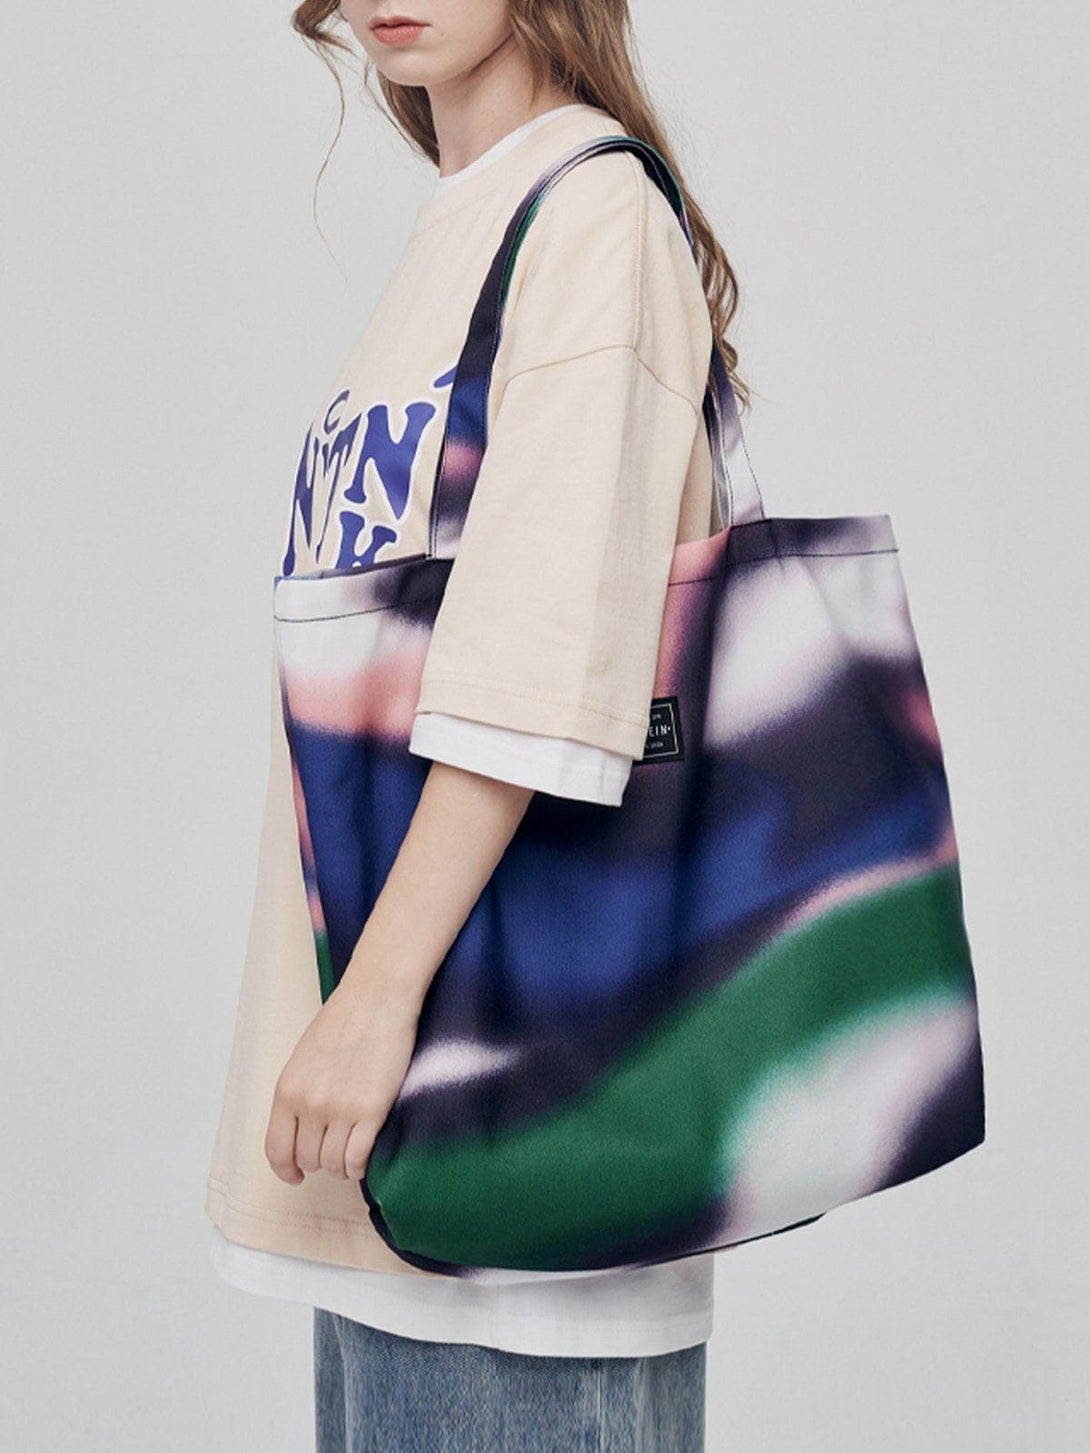 Levefly - Abstraction Contrast Canvas Shoulder Bag Bag - Streetwear Fashion - levefly.com